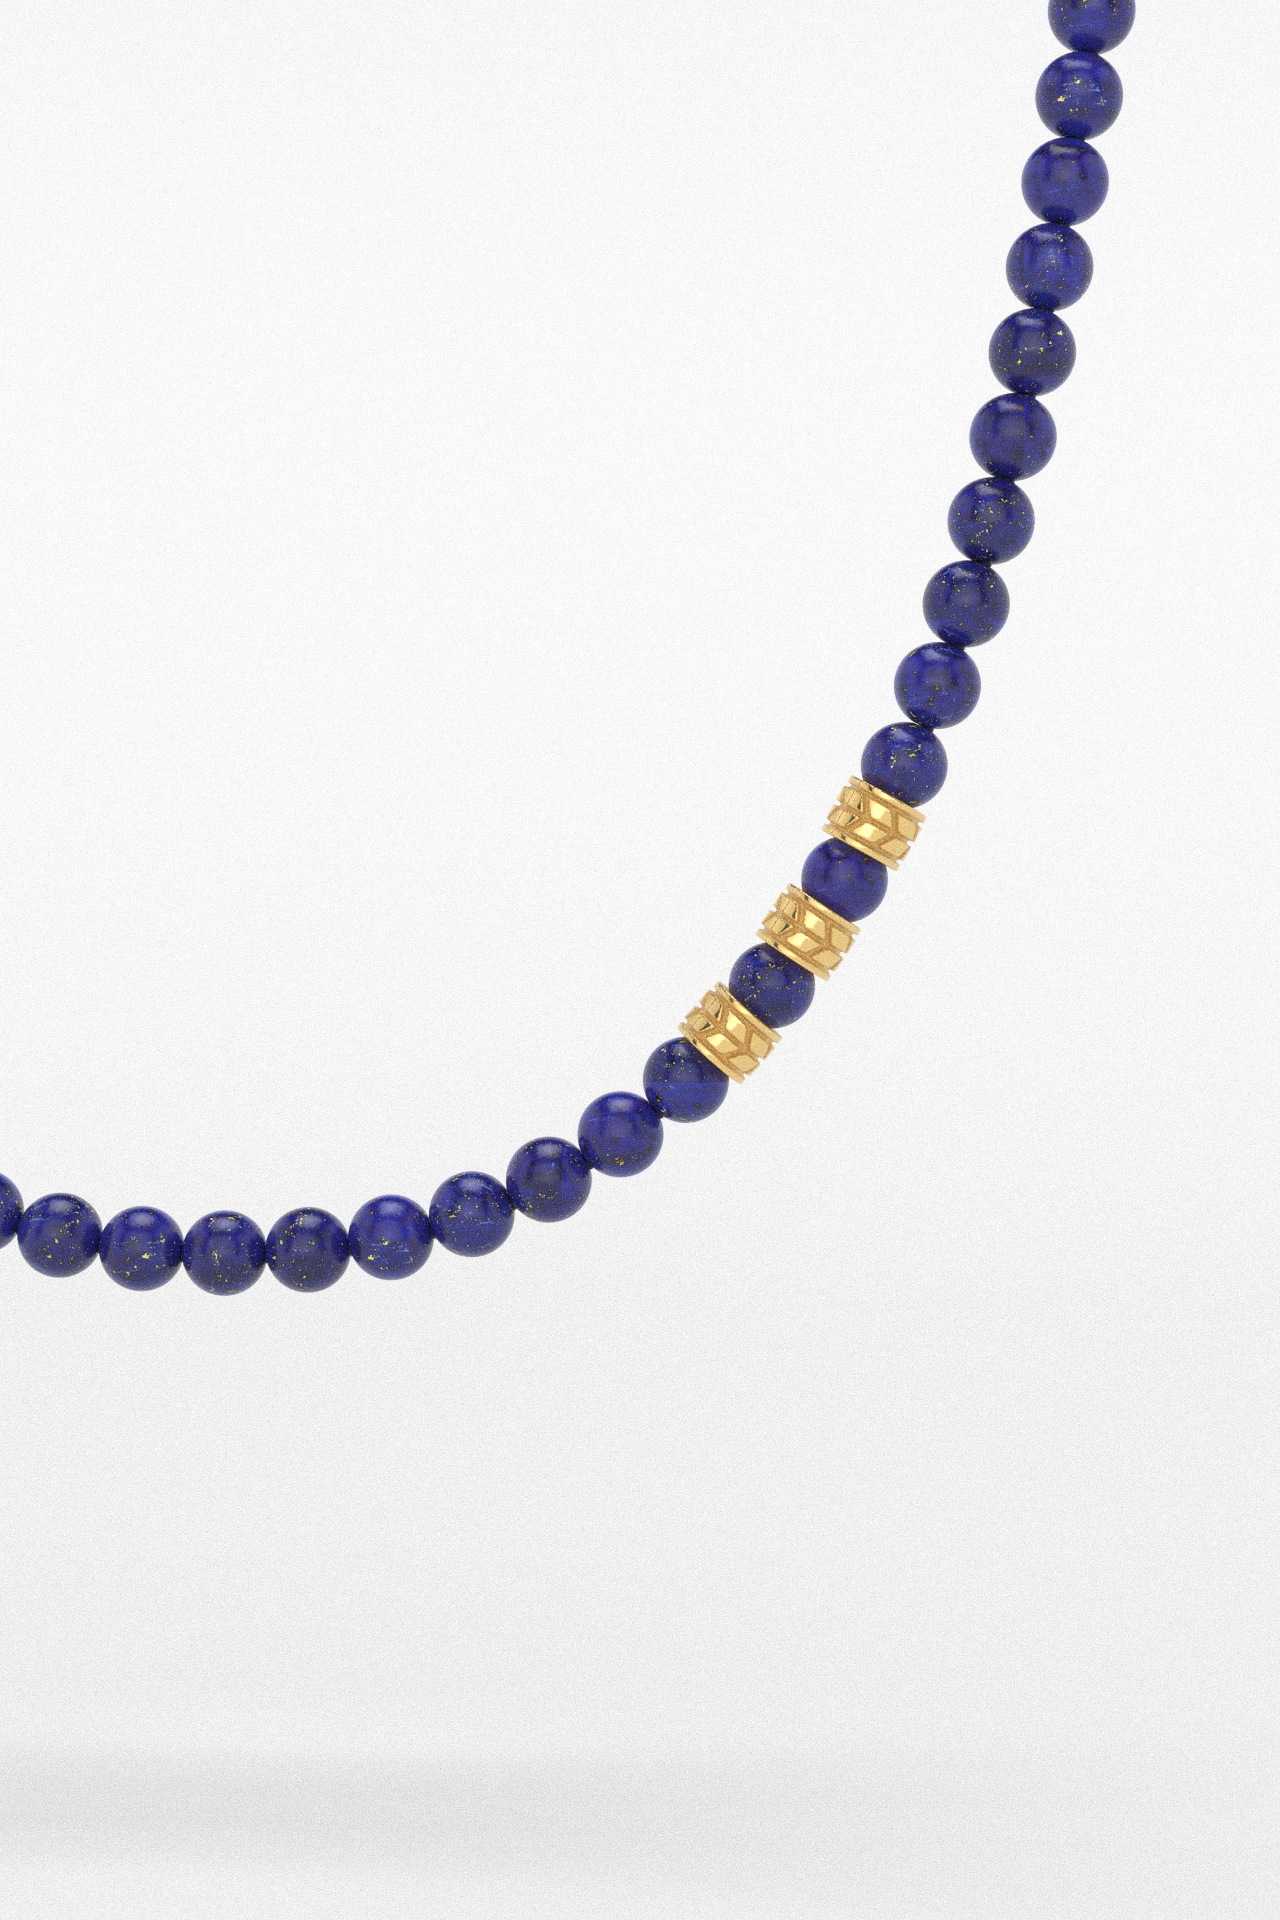 Lapis Lazuli Necklace 8mm | Royale